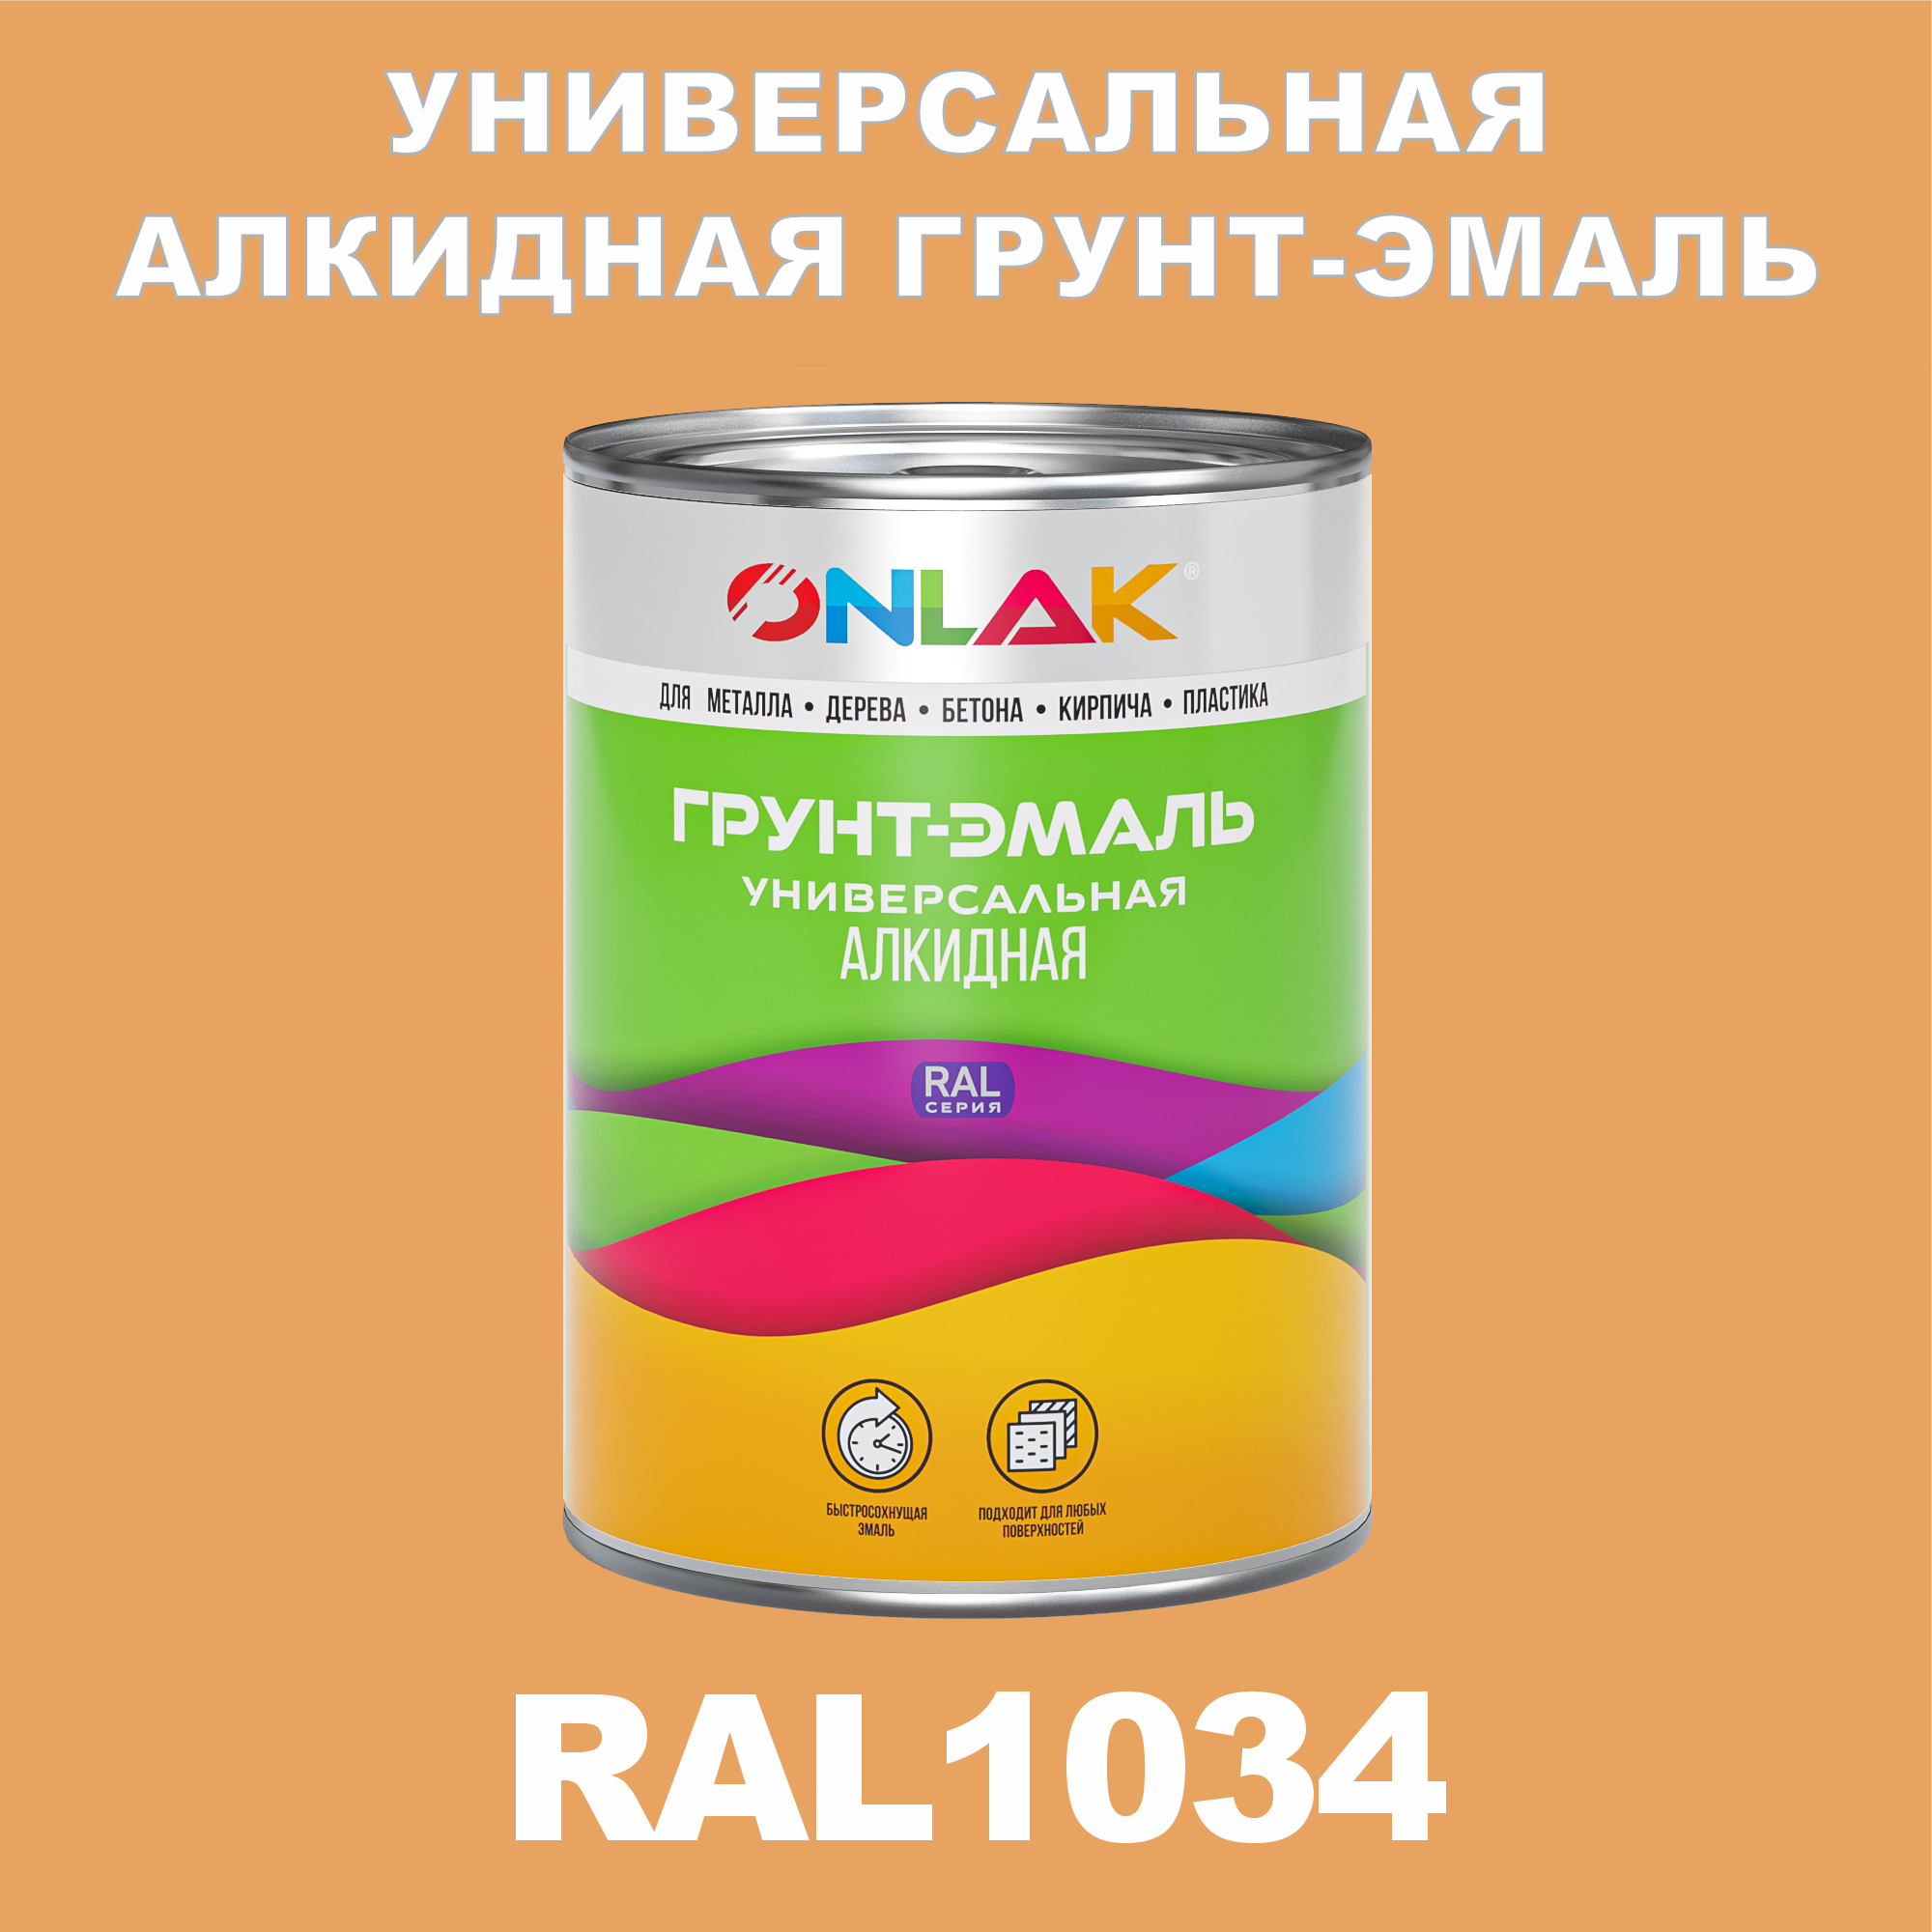 Грунт-эмаль ONLAK 1К RAL1034 антикоррозионная алкидная по металлу по ржавчине 1 кг грунт эмаль neomid по ржавчине быстросохнущая алкидная серая 0 9 кг